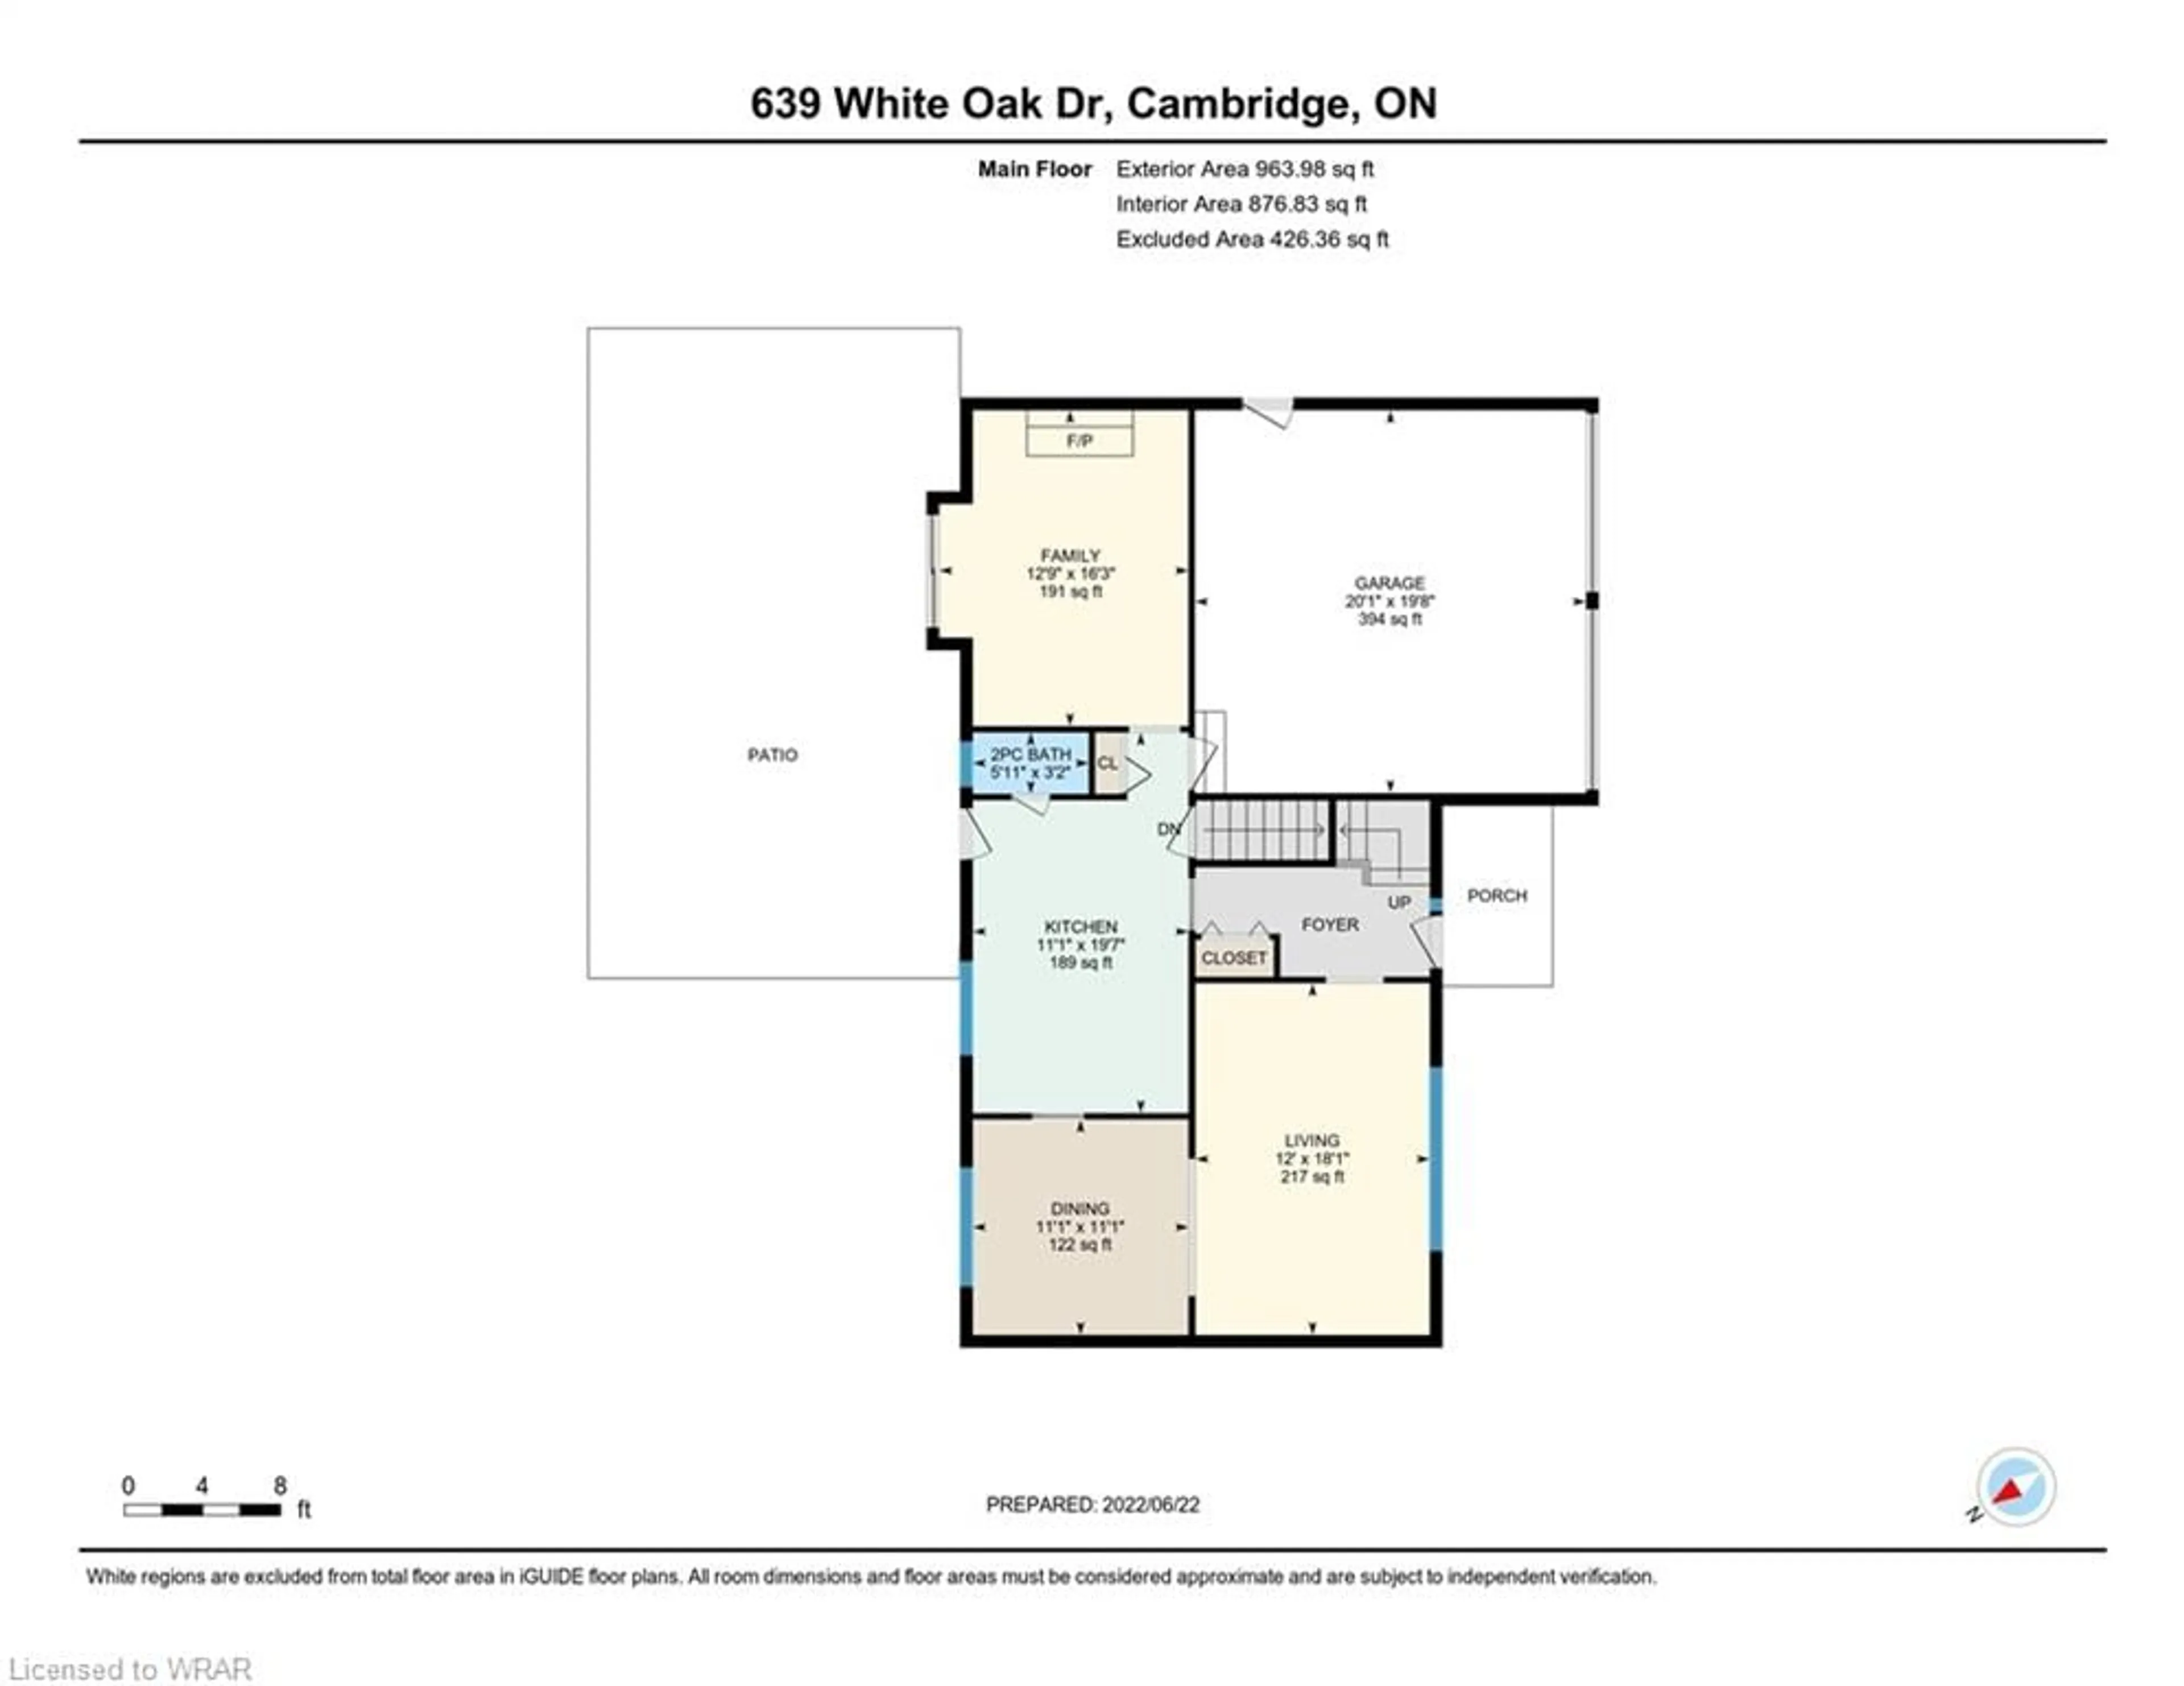 Floor plan for 639 White Oak Dr, Cambridge Ontario N1S 4J4